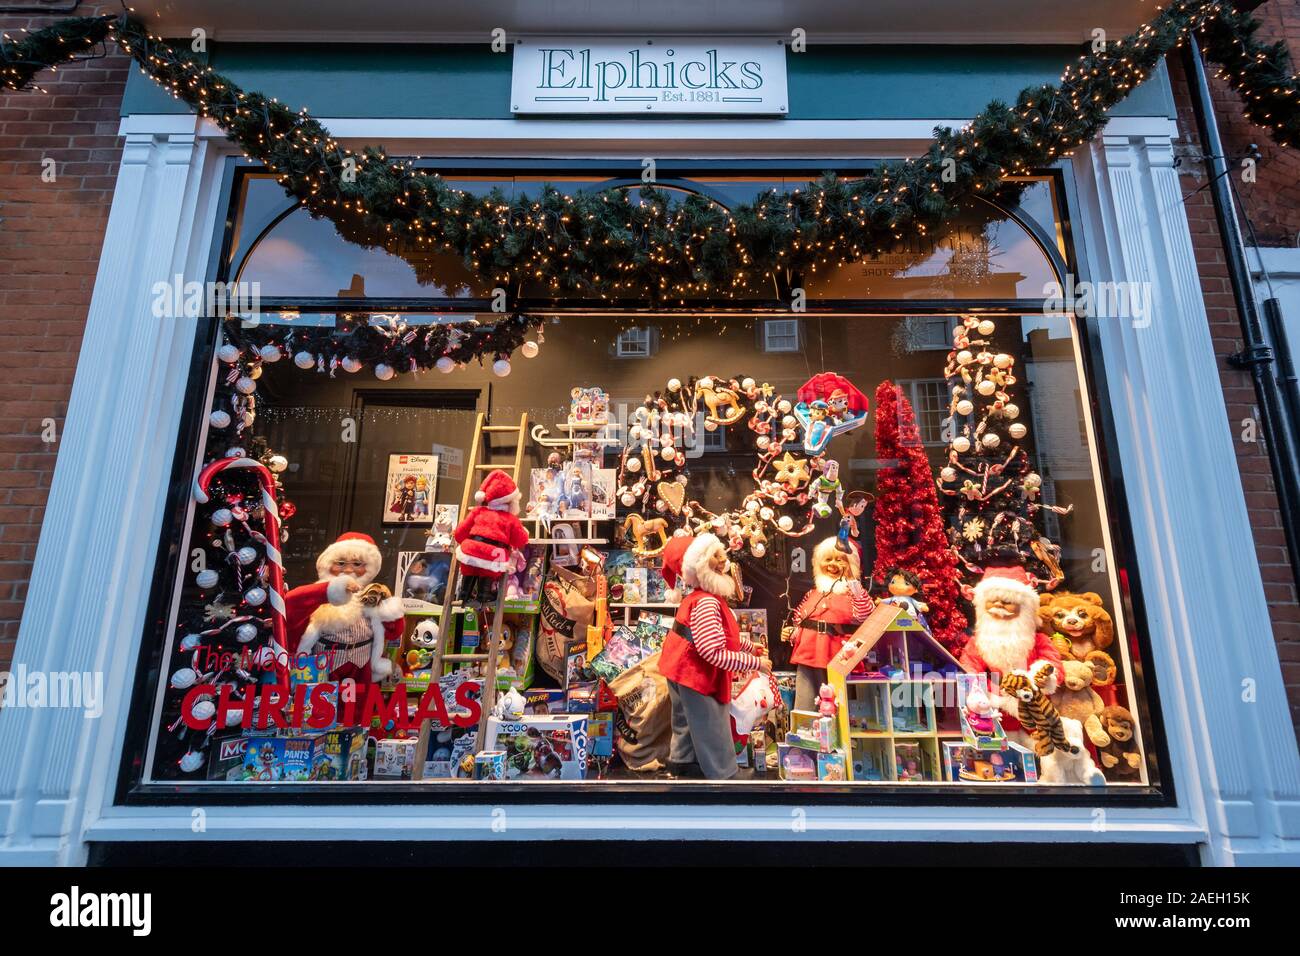 Elphicks department store dans le centre-ville de Farnham - vitrine d'affichage de Noël, Surrey, UK Banque D'Images